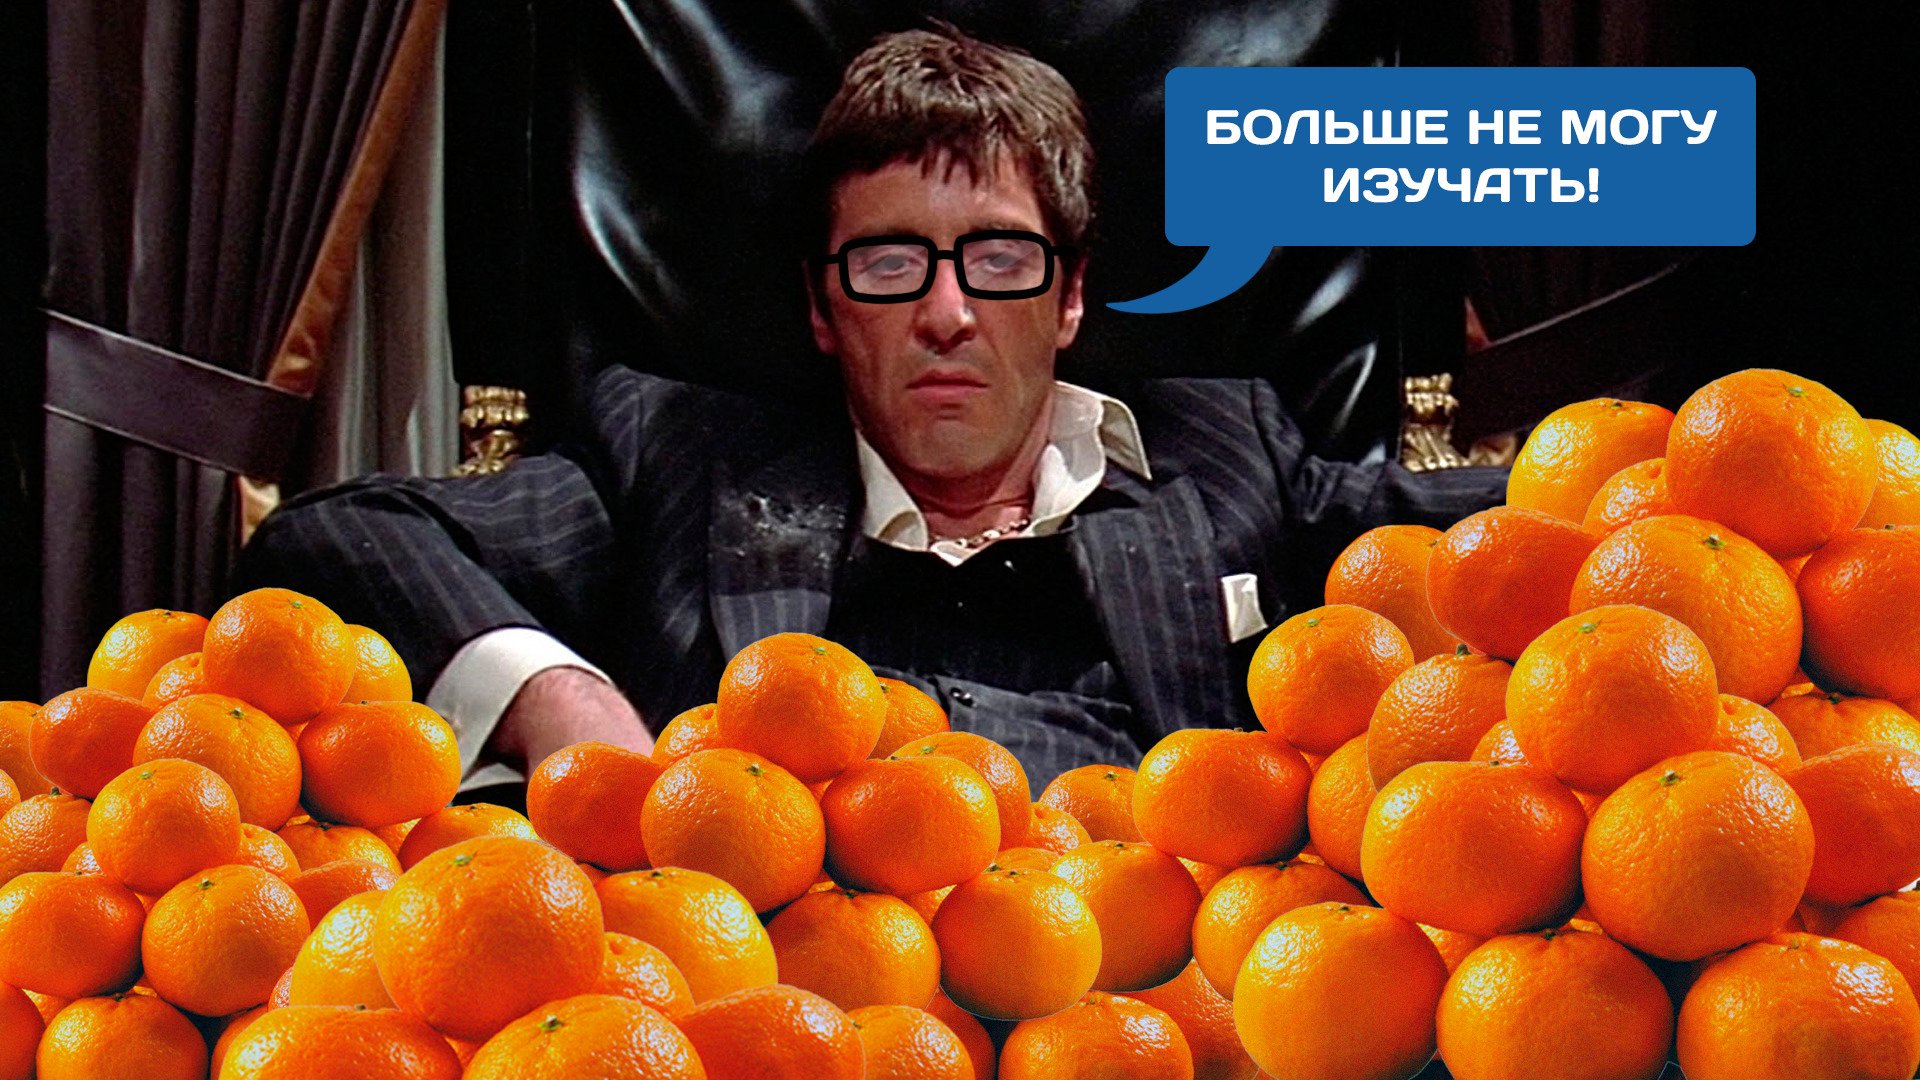 Мандарины 2013 отзывы. Тони Монтана с мандаринами. Человек-мандарин. Самые большие мандарины. Мандарины прикол.